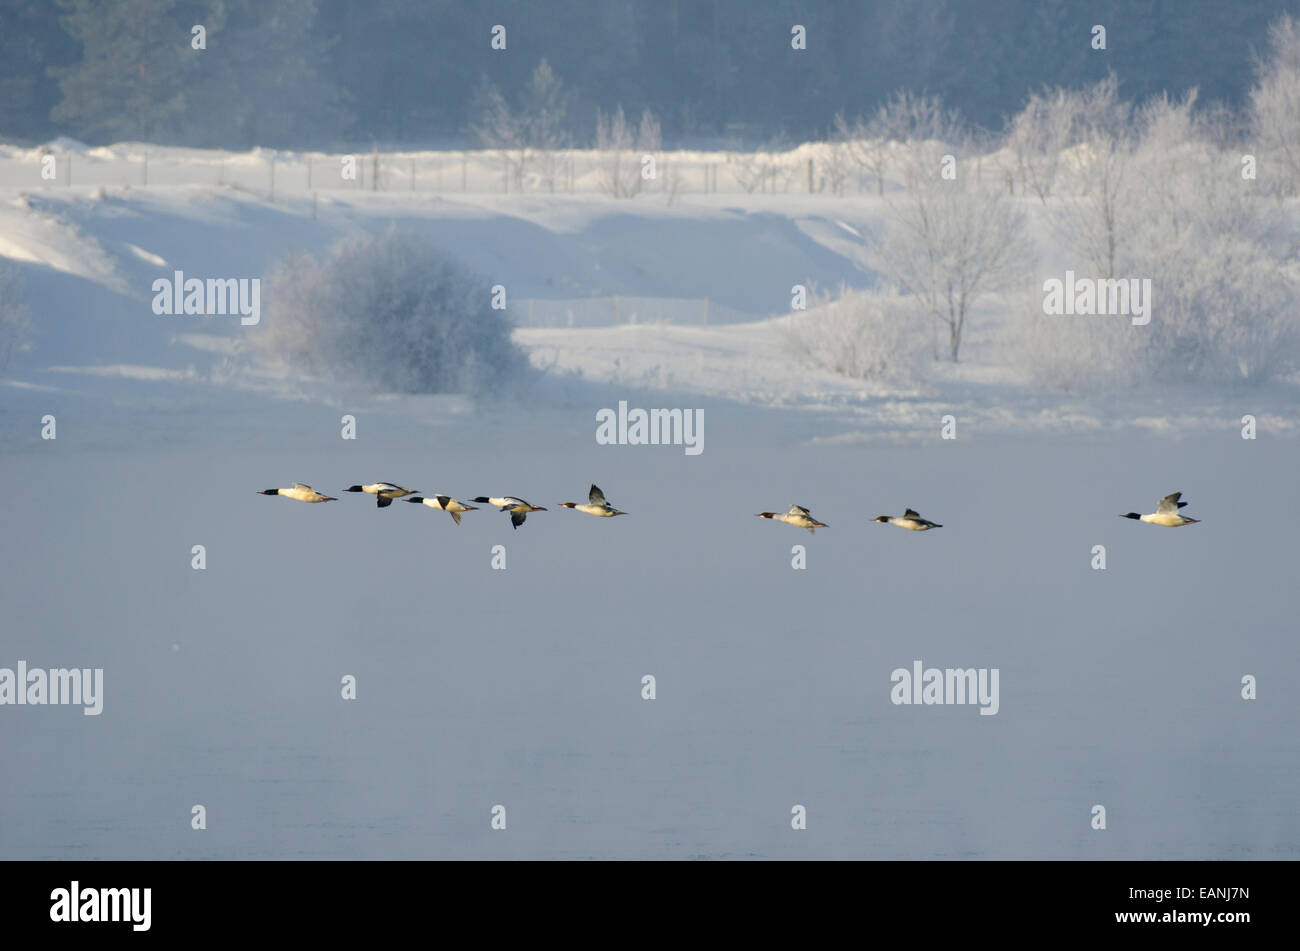 Flock of Goosanders flying over frozen river Stock Photo